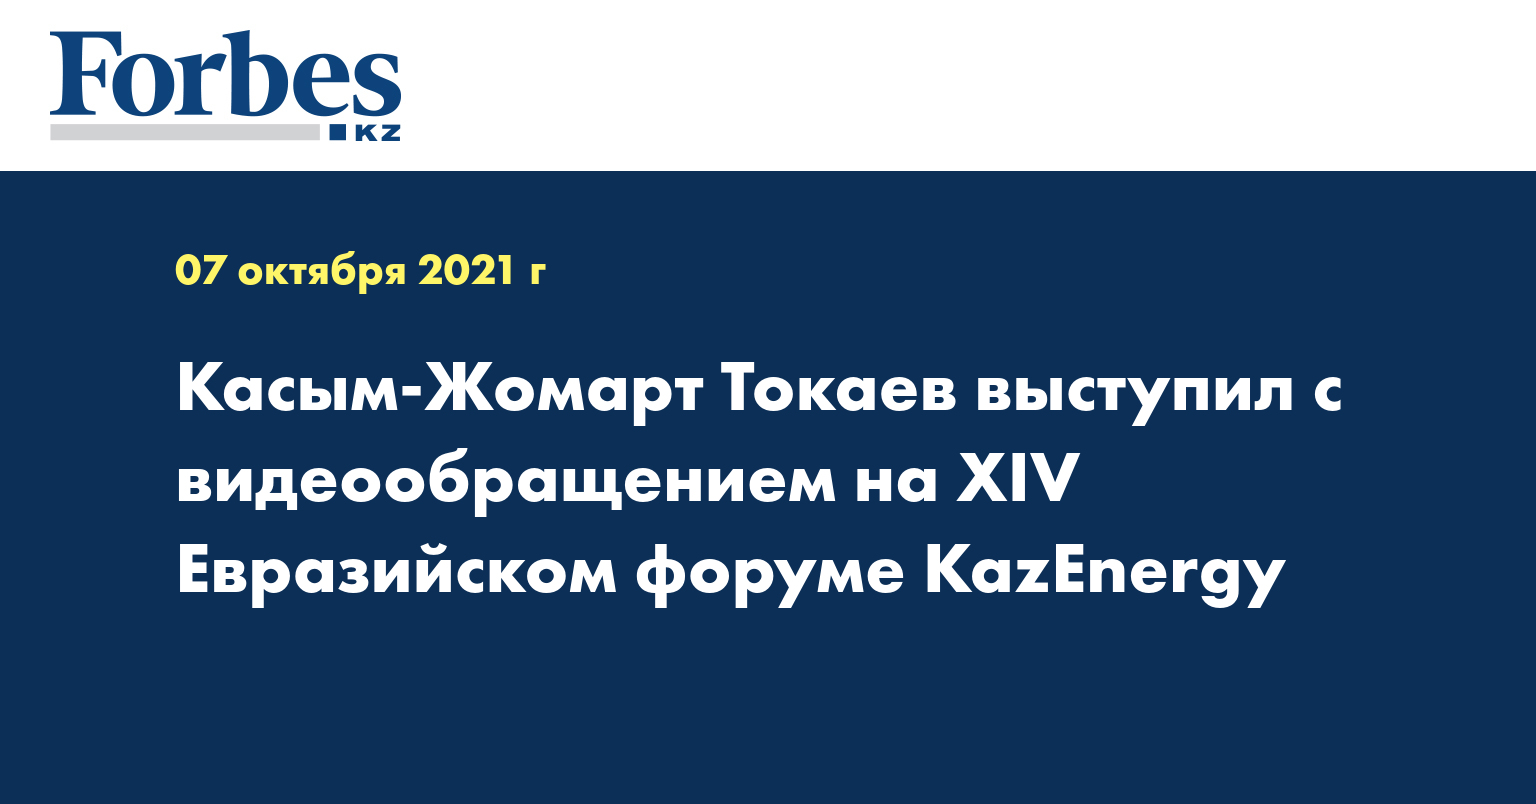 Касым-Жомарт Токаев выступил с видеообращением на ХIV Евразийском форуме KazEnergy